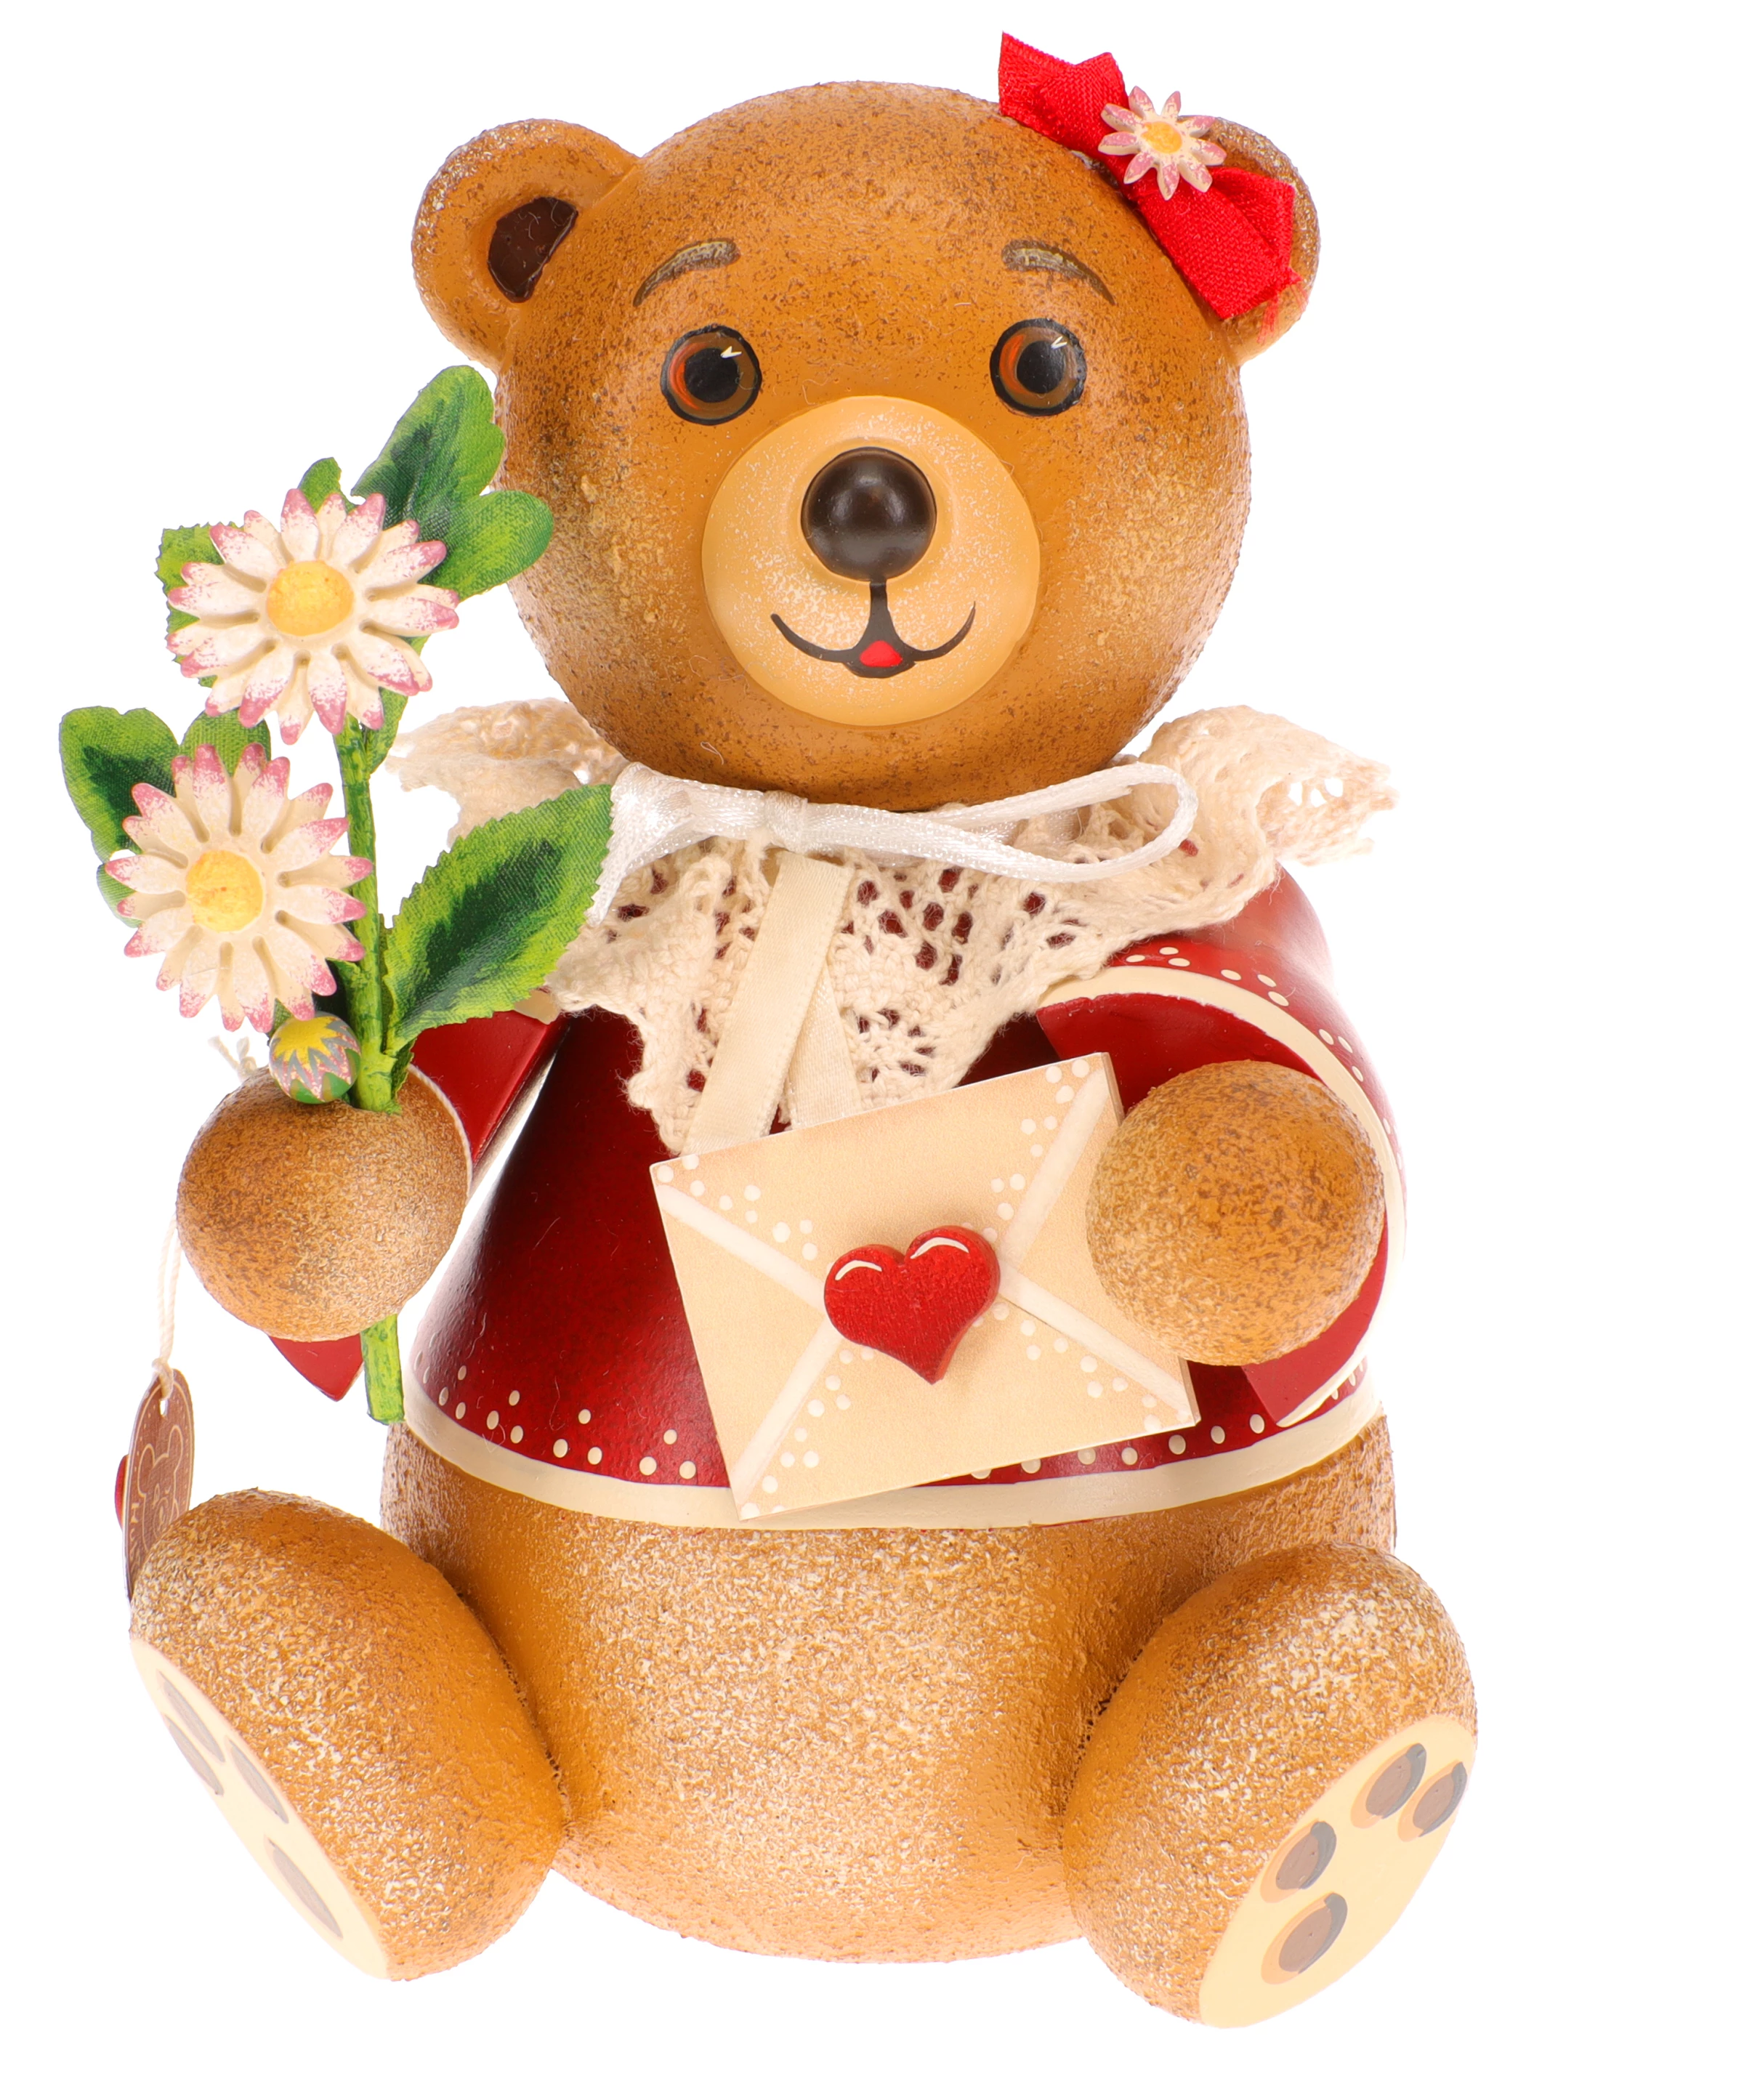 Hubrig Hubiduu ® - Teddy mit Herz - Herzenssache | Der größte Hubrig Shop:  ORIGINAL HUBRIG Laden - Komplettsortiment, alle Neuheiten, kurze Lieferzeit